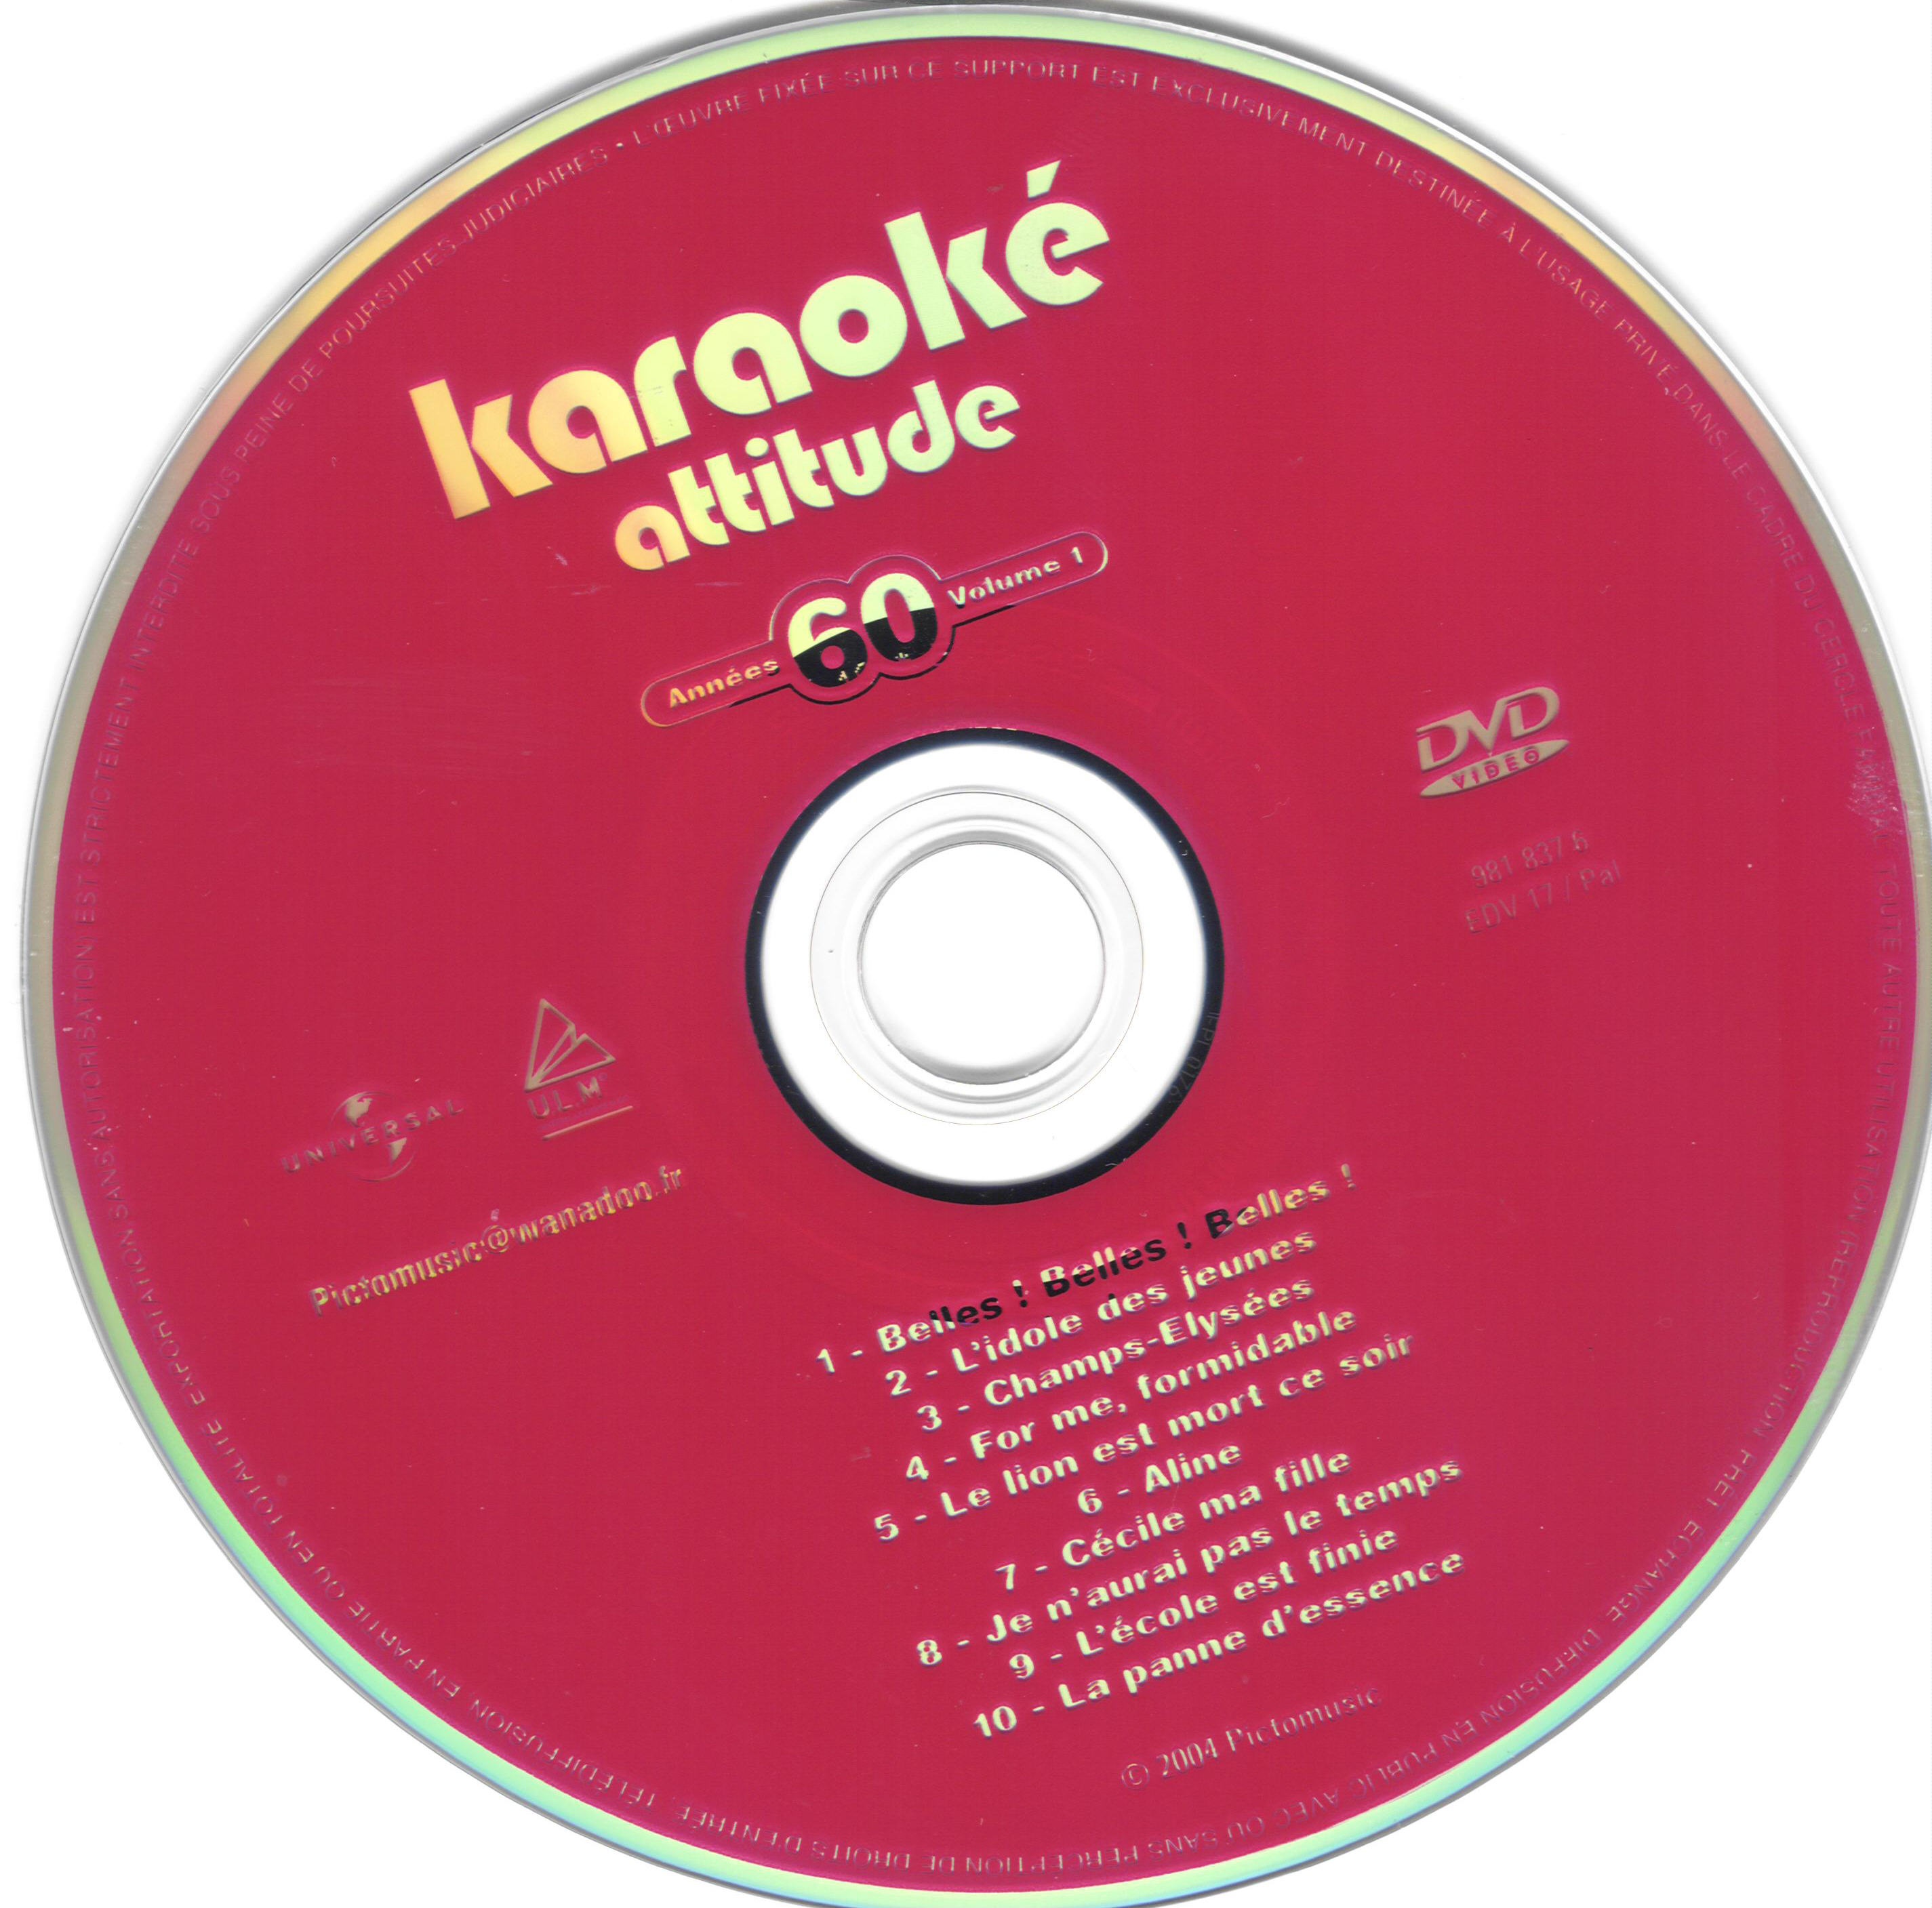 Karaoke attitude annees 60 vol 1